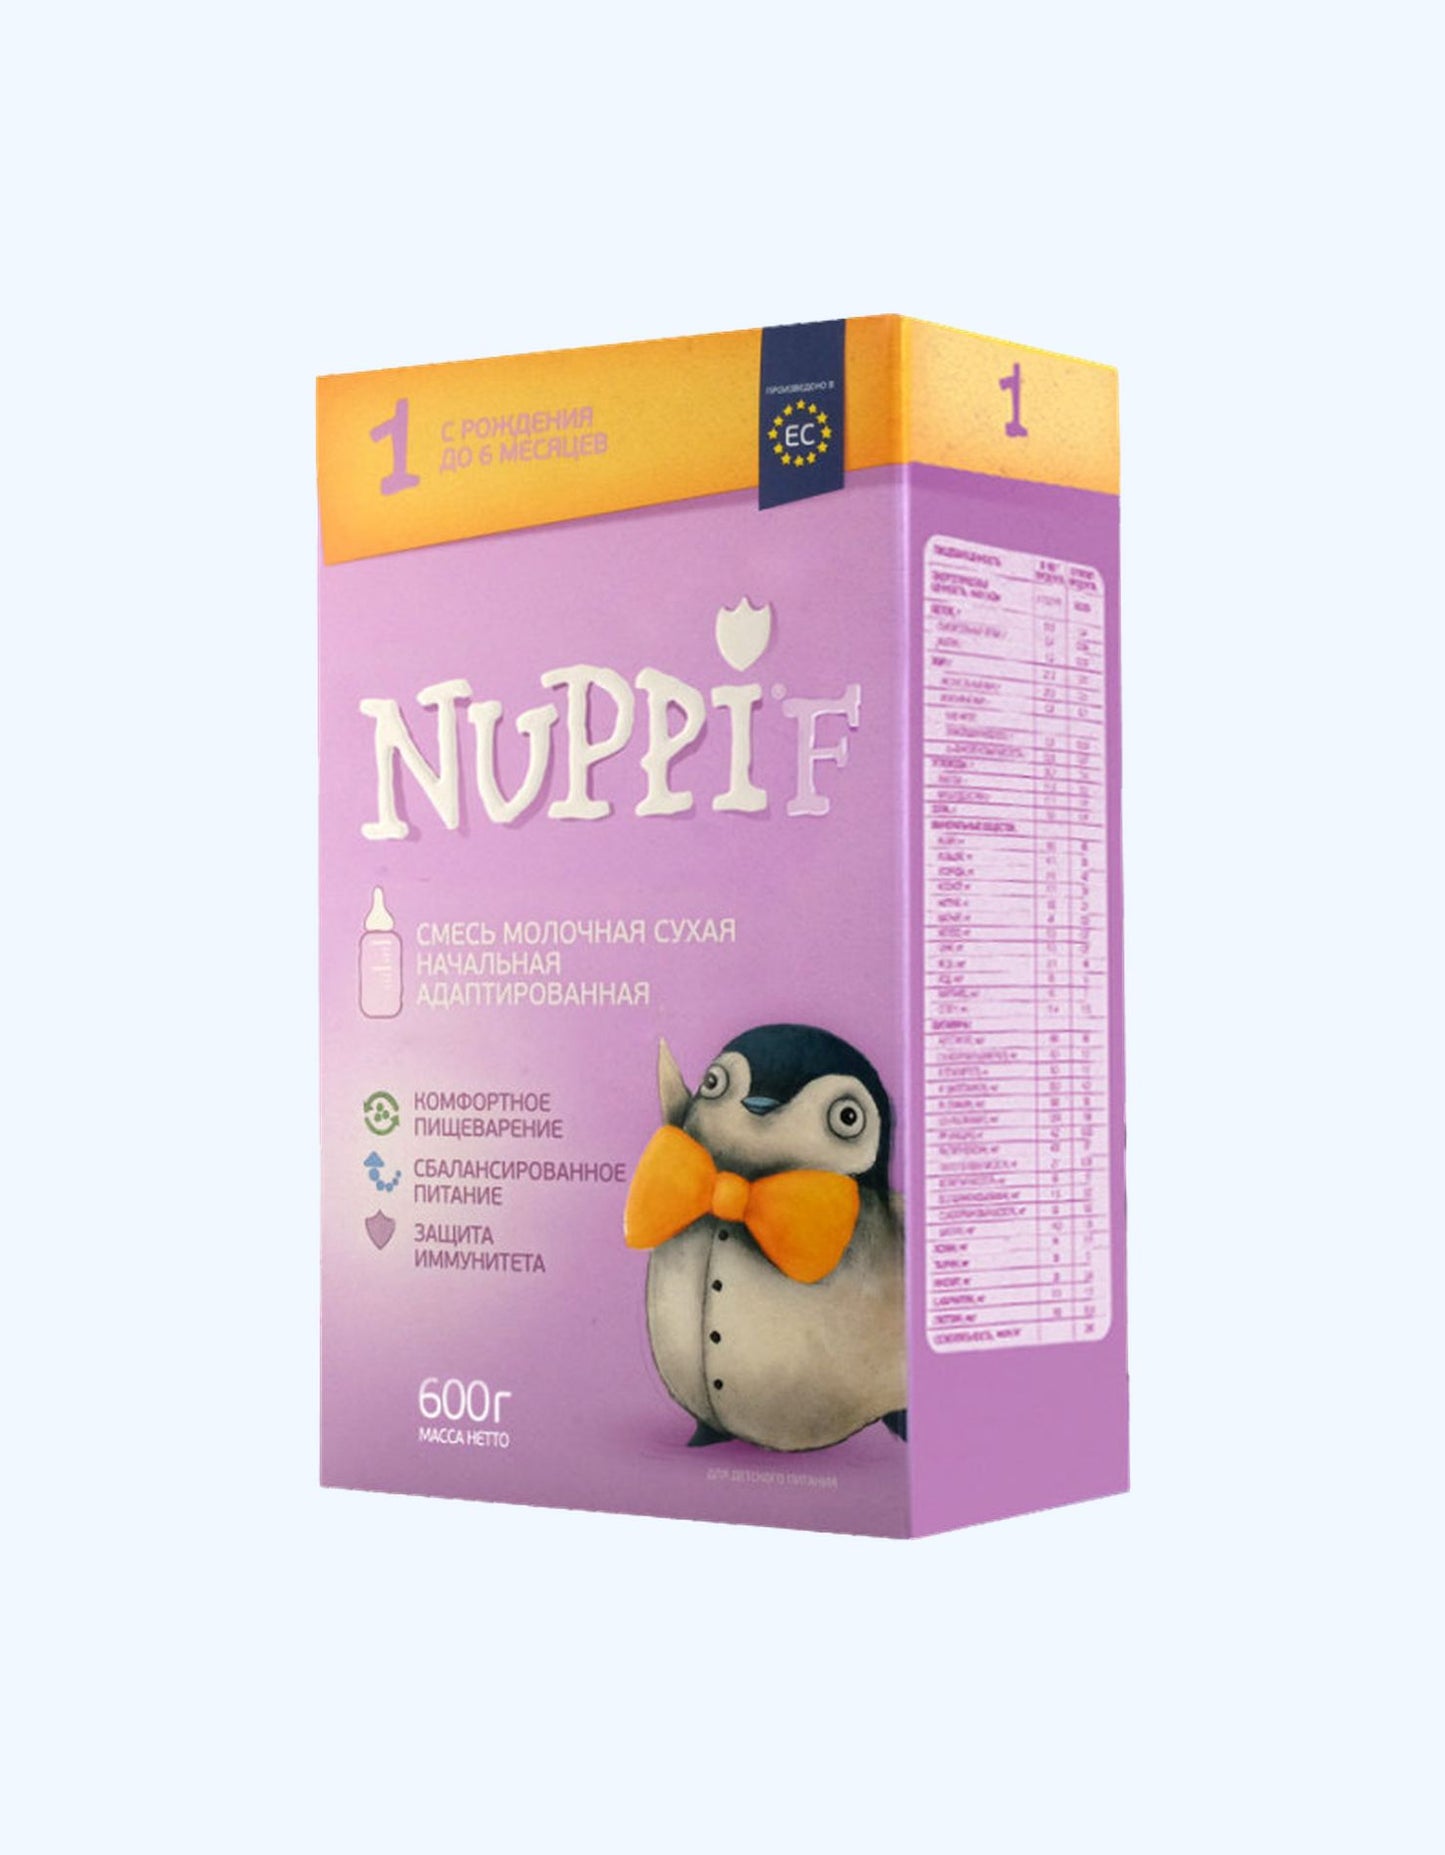 Nuppi F1, сухая молочная смесь, 0-6 мес., начальная адаптированная, 300/600 г